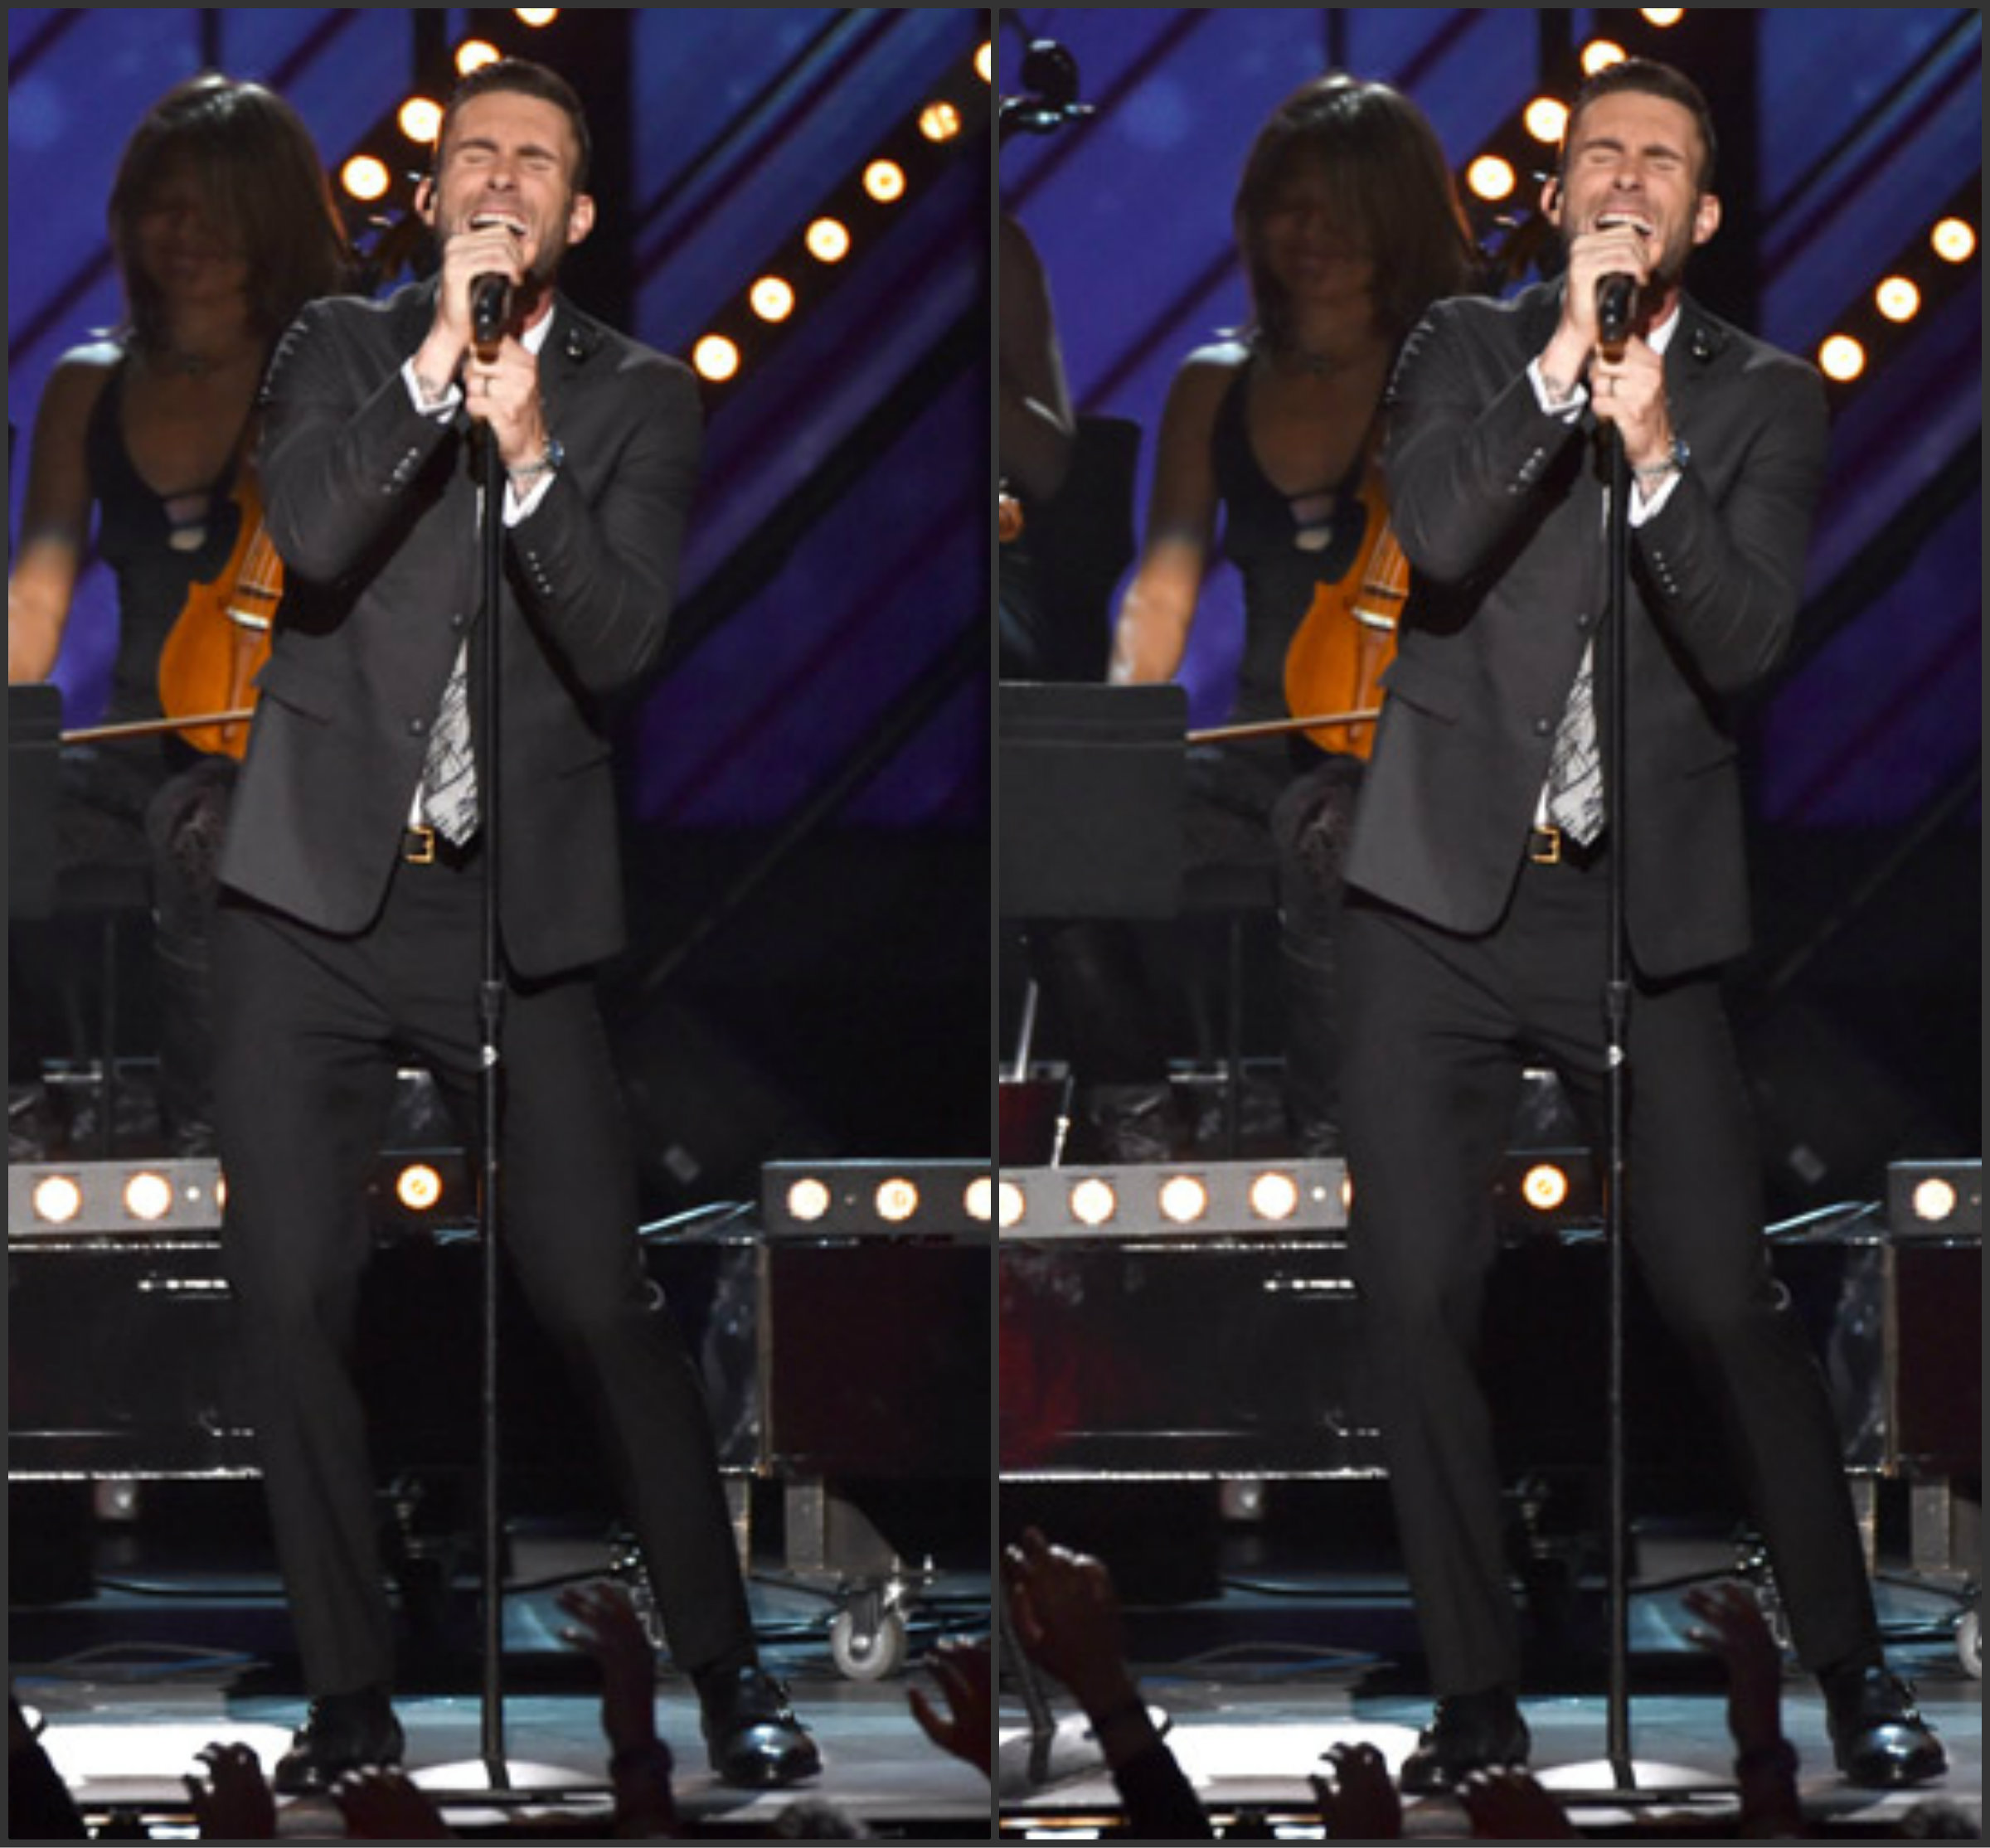 Adam-Levine-in-Dior-Homme- 2015-Grammy-Awards-performance